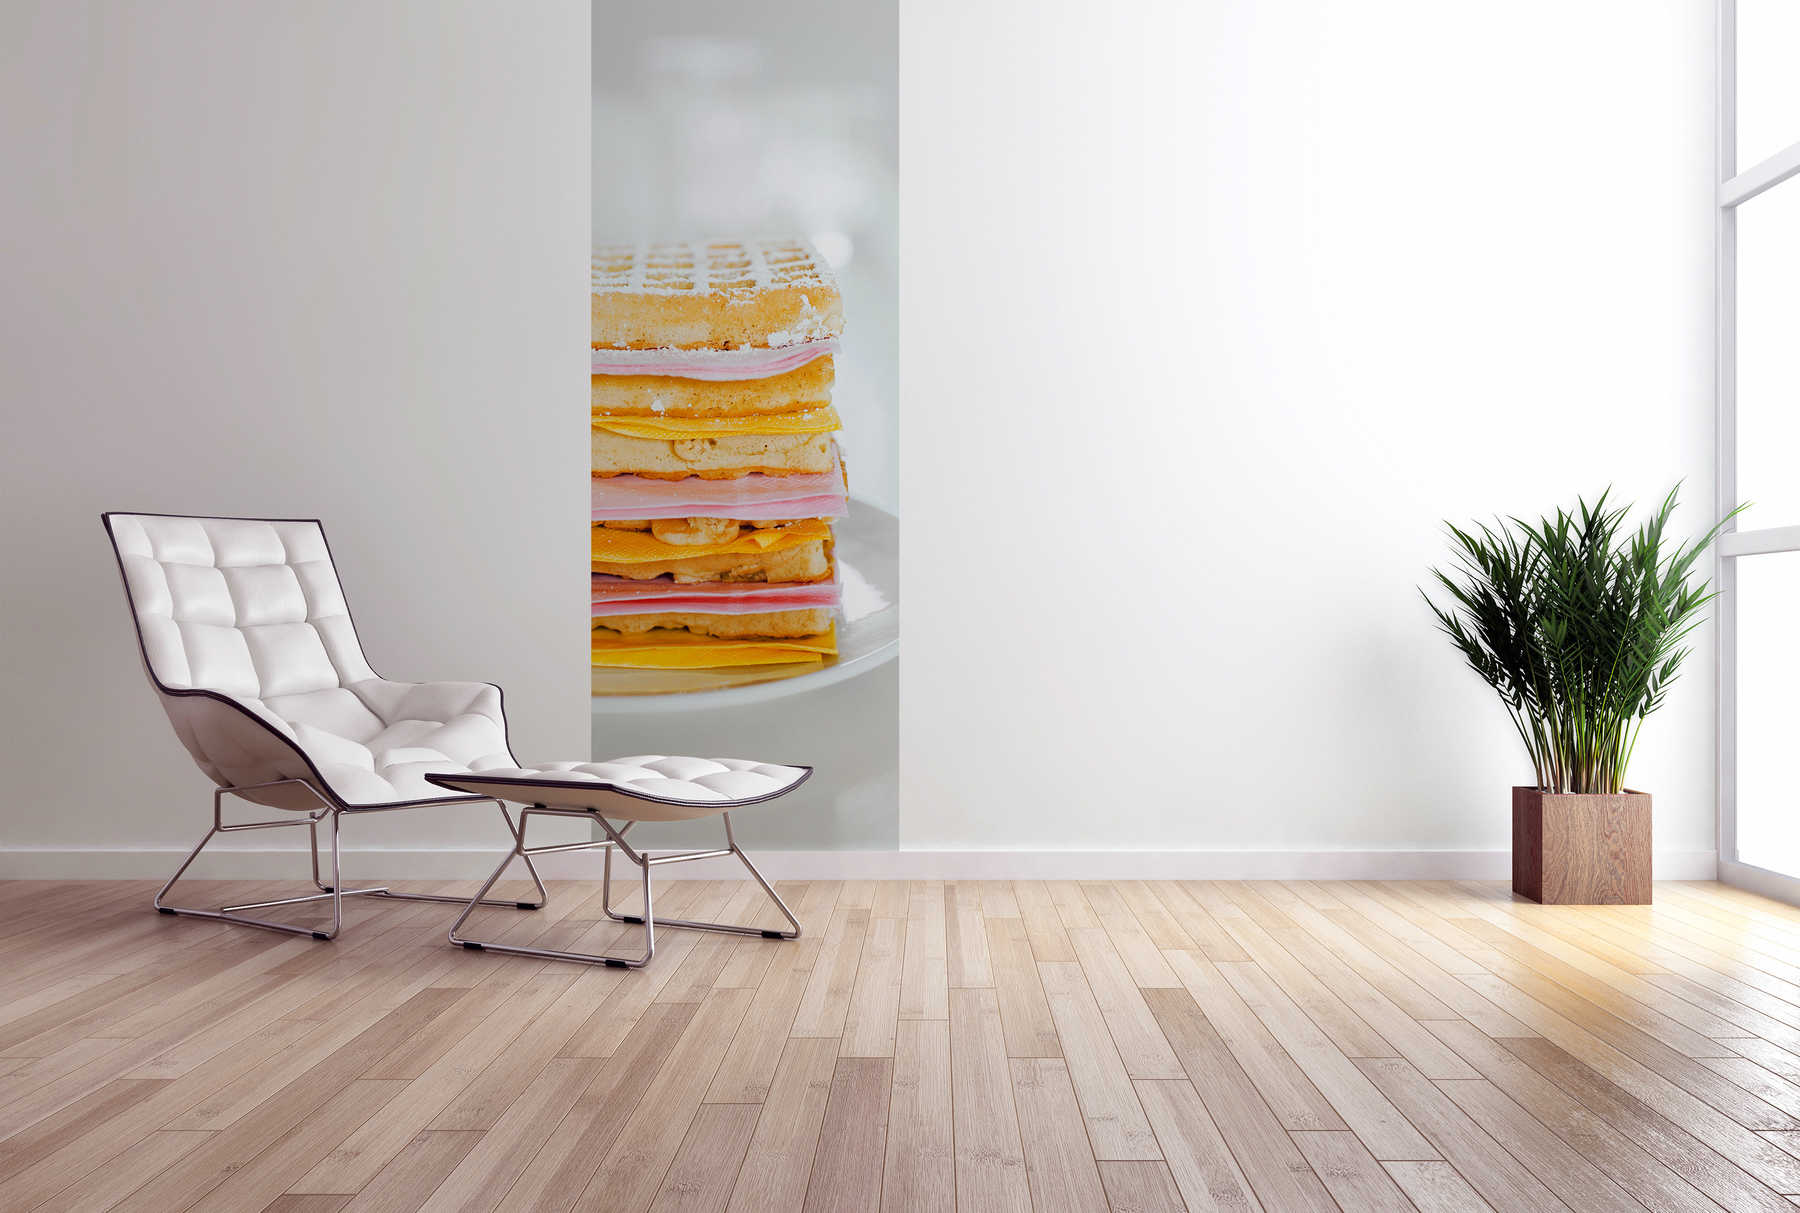             Moderne Fototapete Waffel Sandwich auf Premium Glattvlies
        